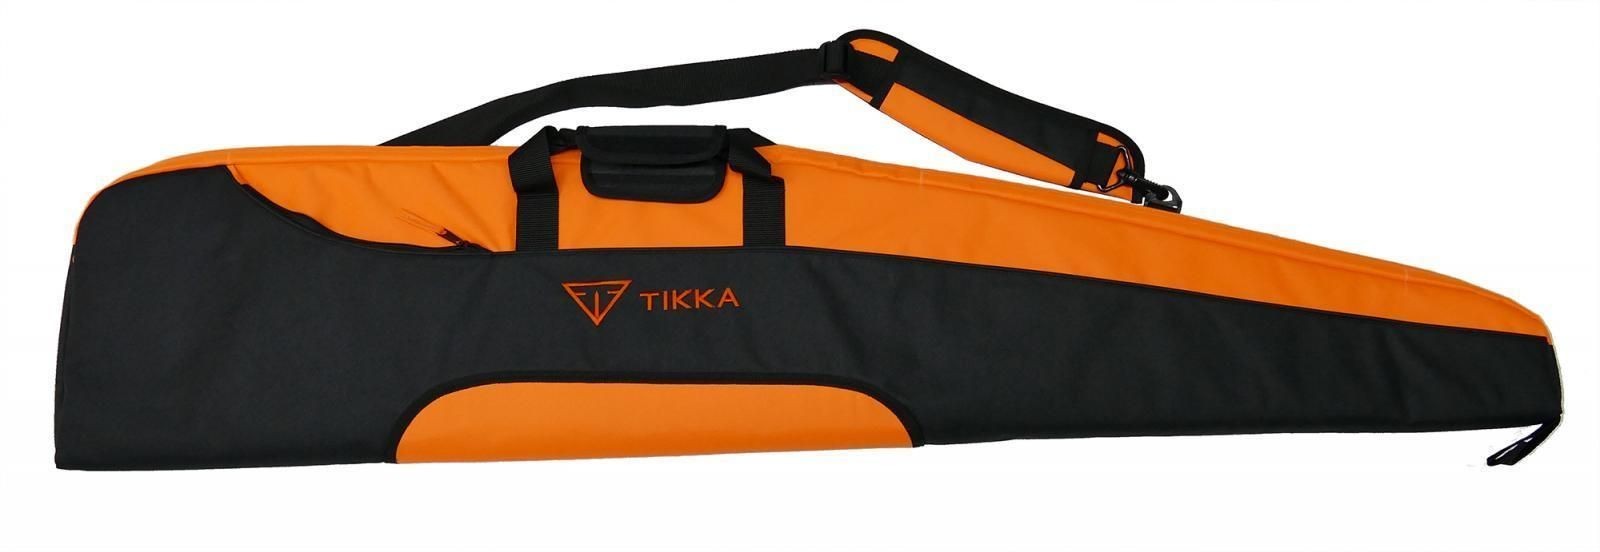 Tikka T3x Adjustable Vänster - Black Edition Paket